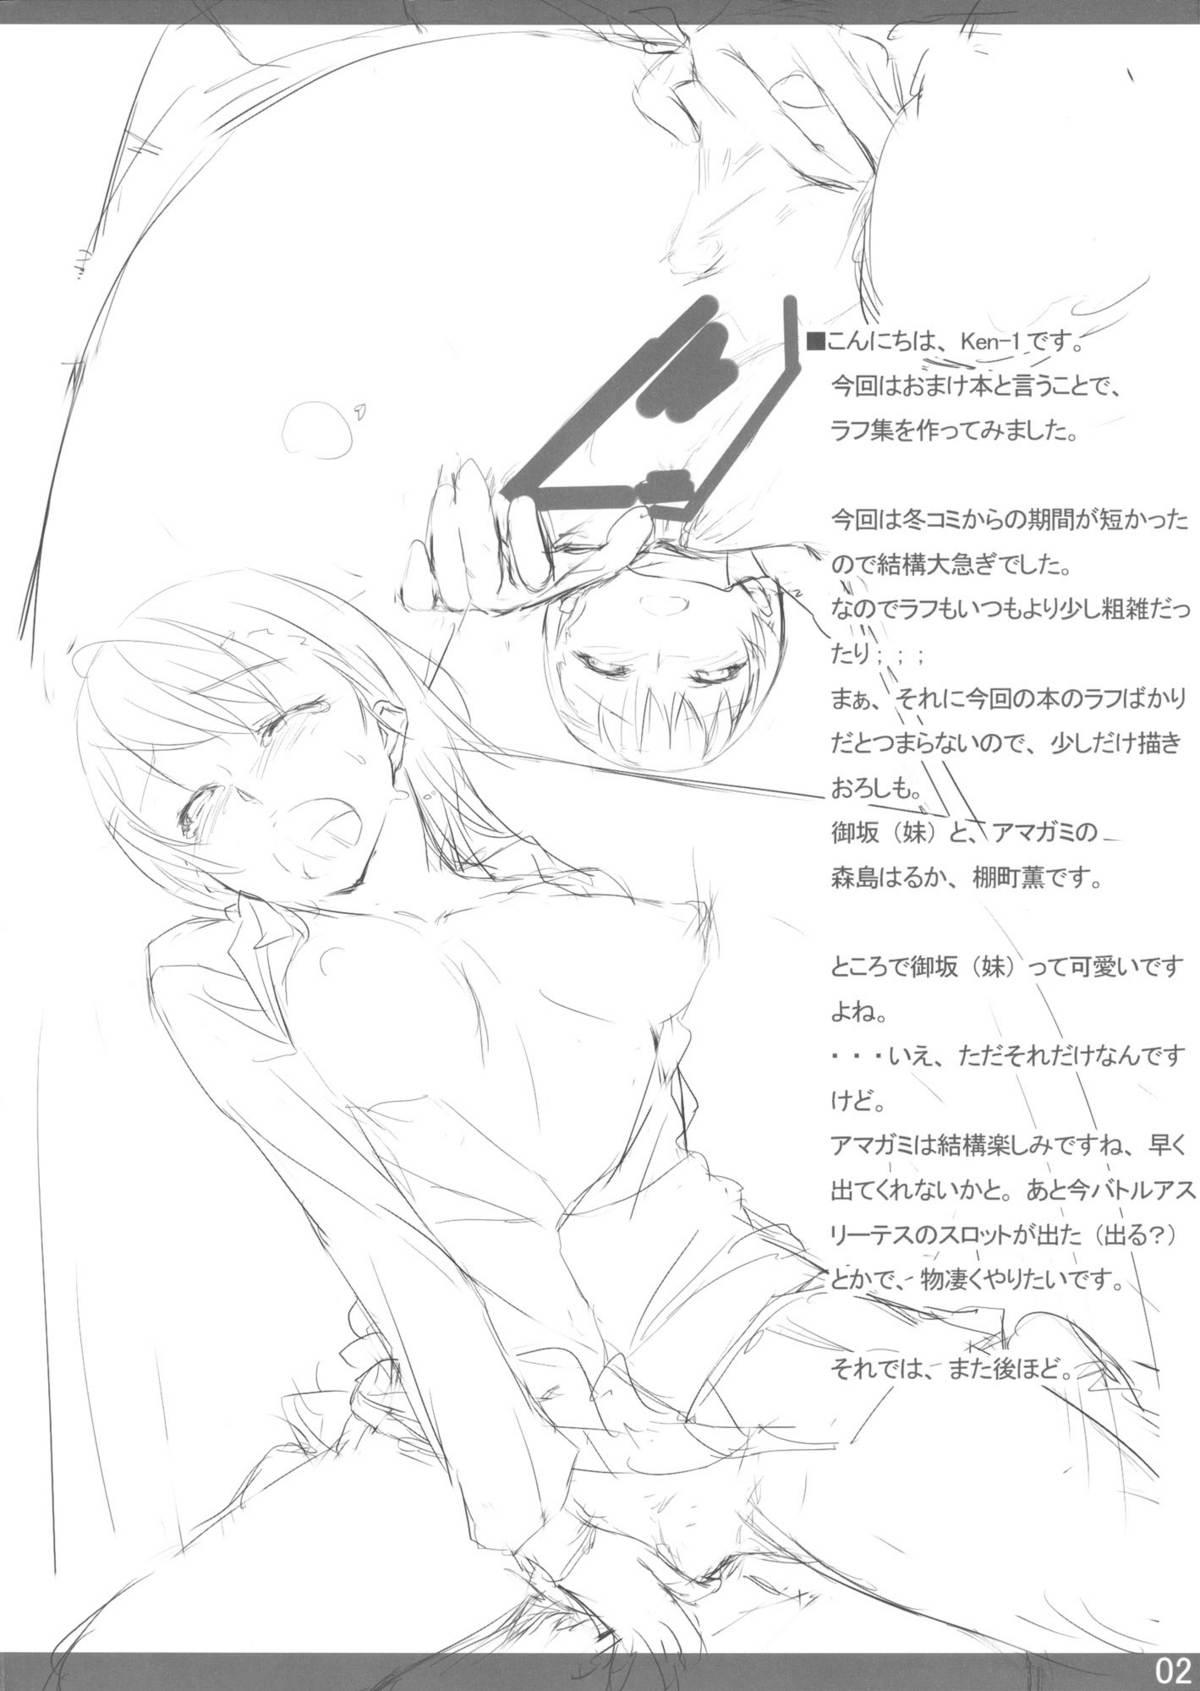 Boy Fuck Girl Beautiful Harp 2 Omakebon - Toaru kagaku no railgun Toaru majutsu no index Scandal - Page 2